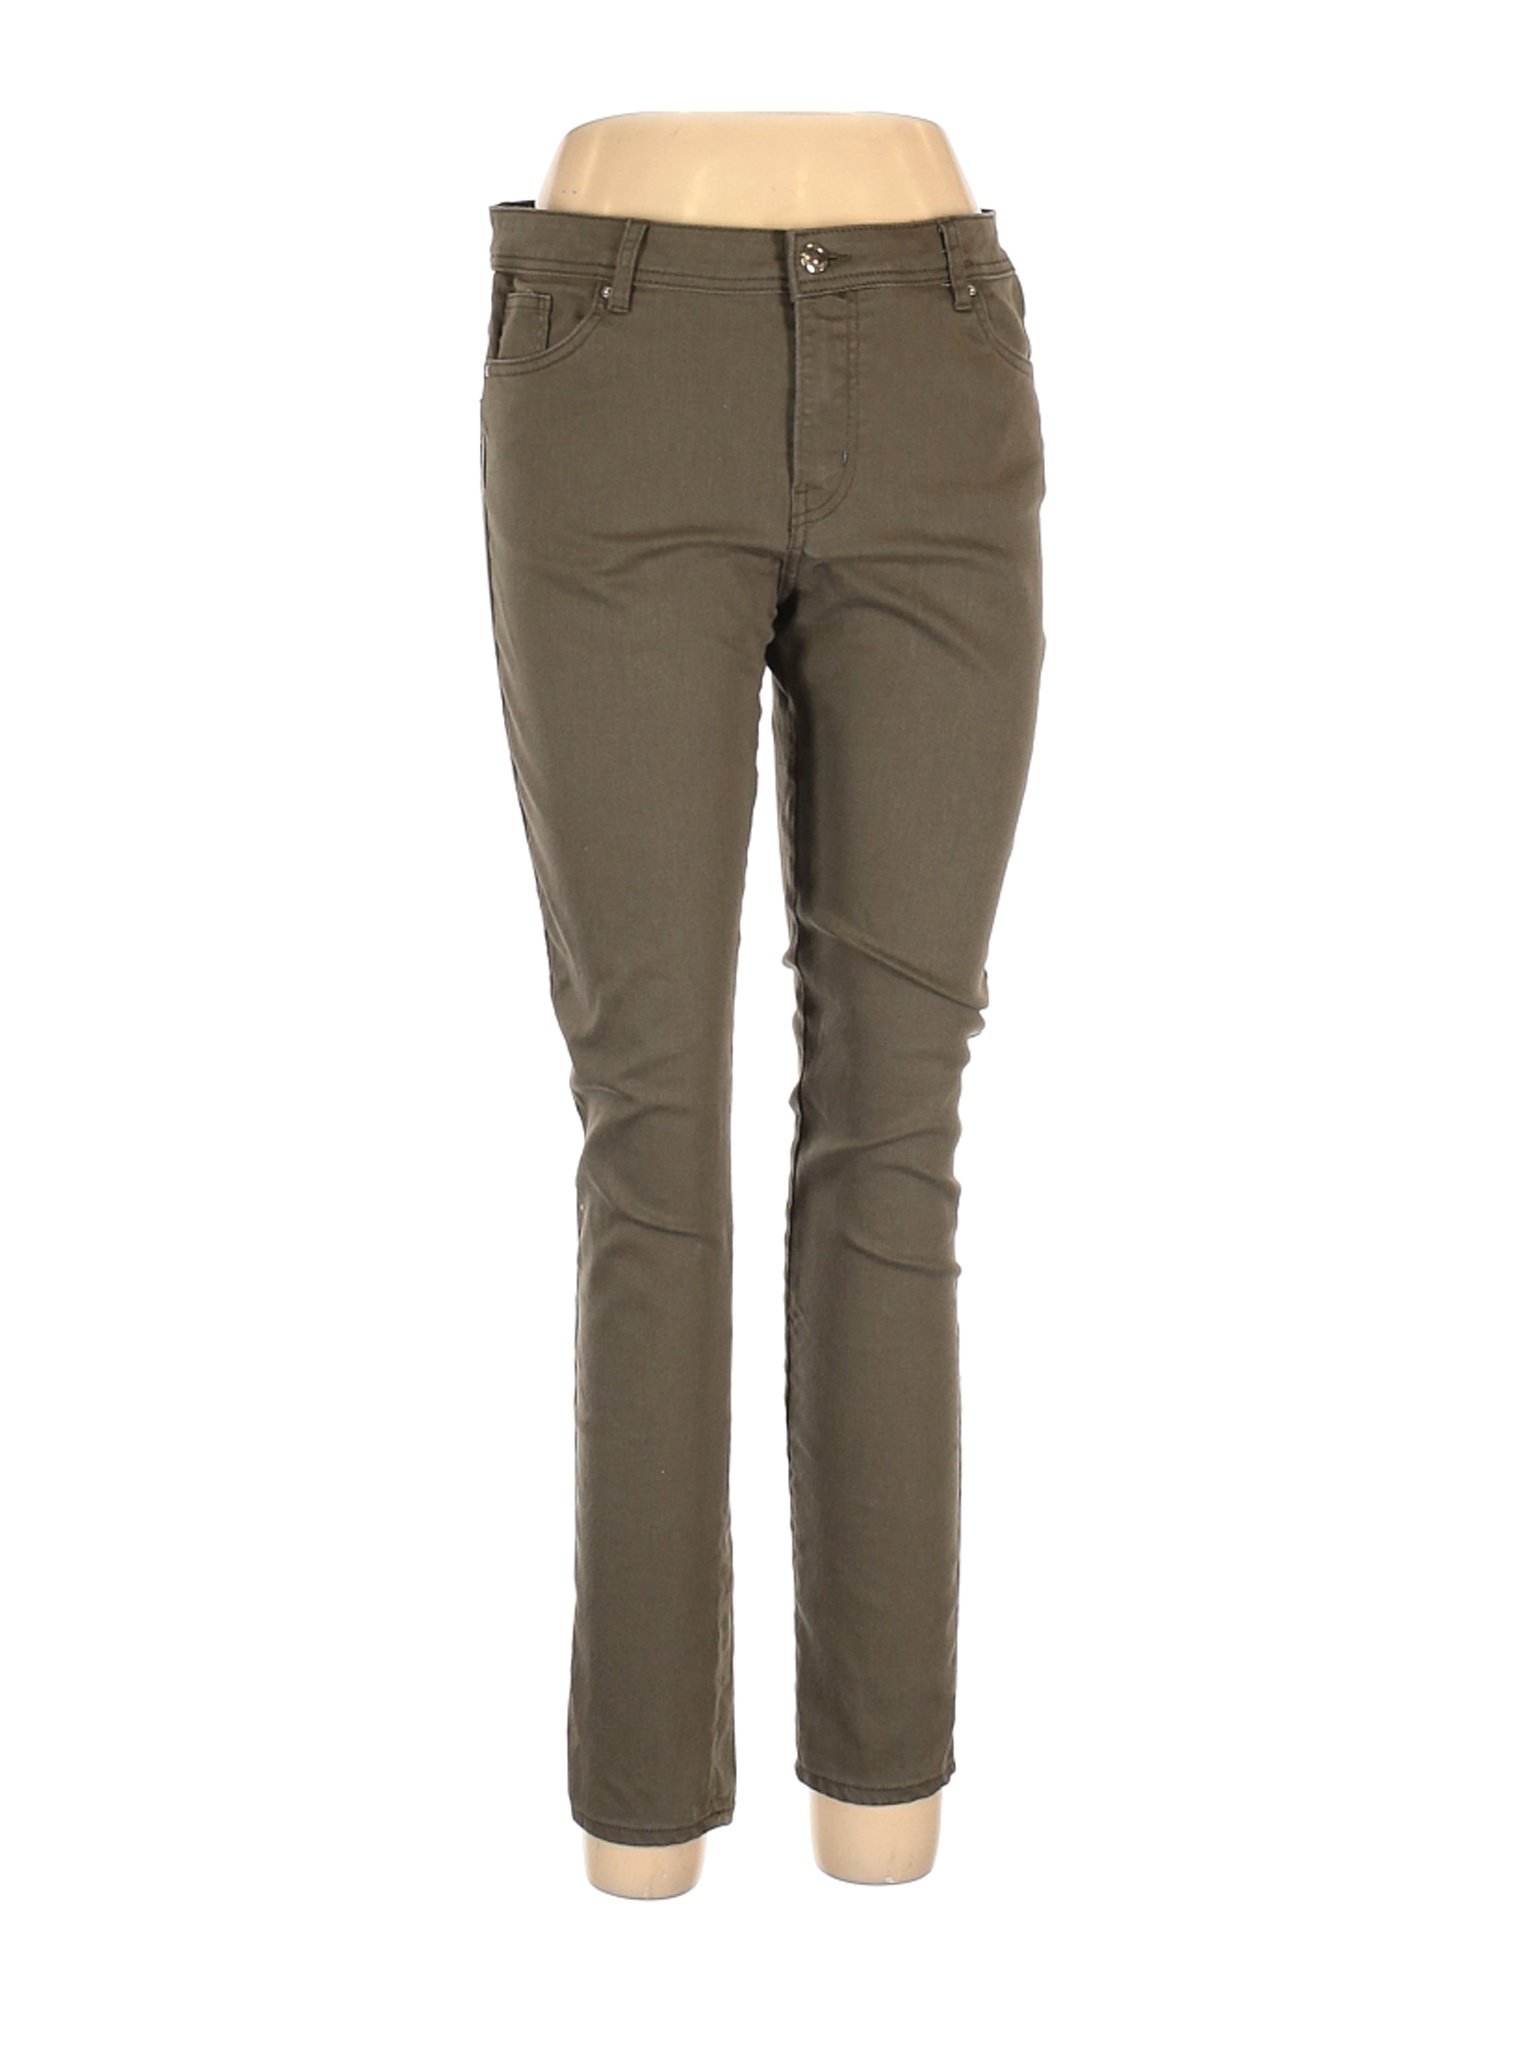 H&M Women Green Jeans 12 | eBay